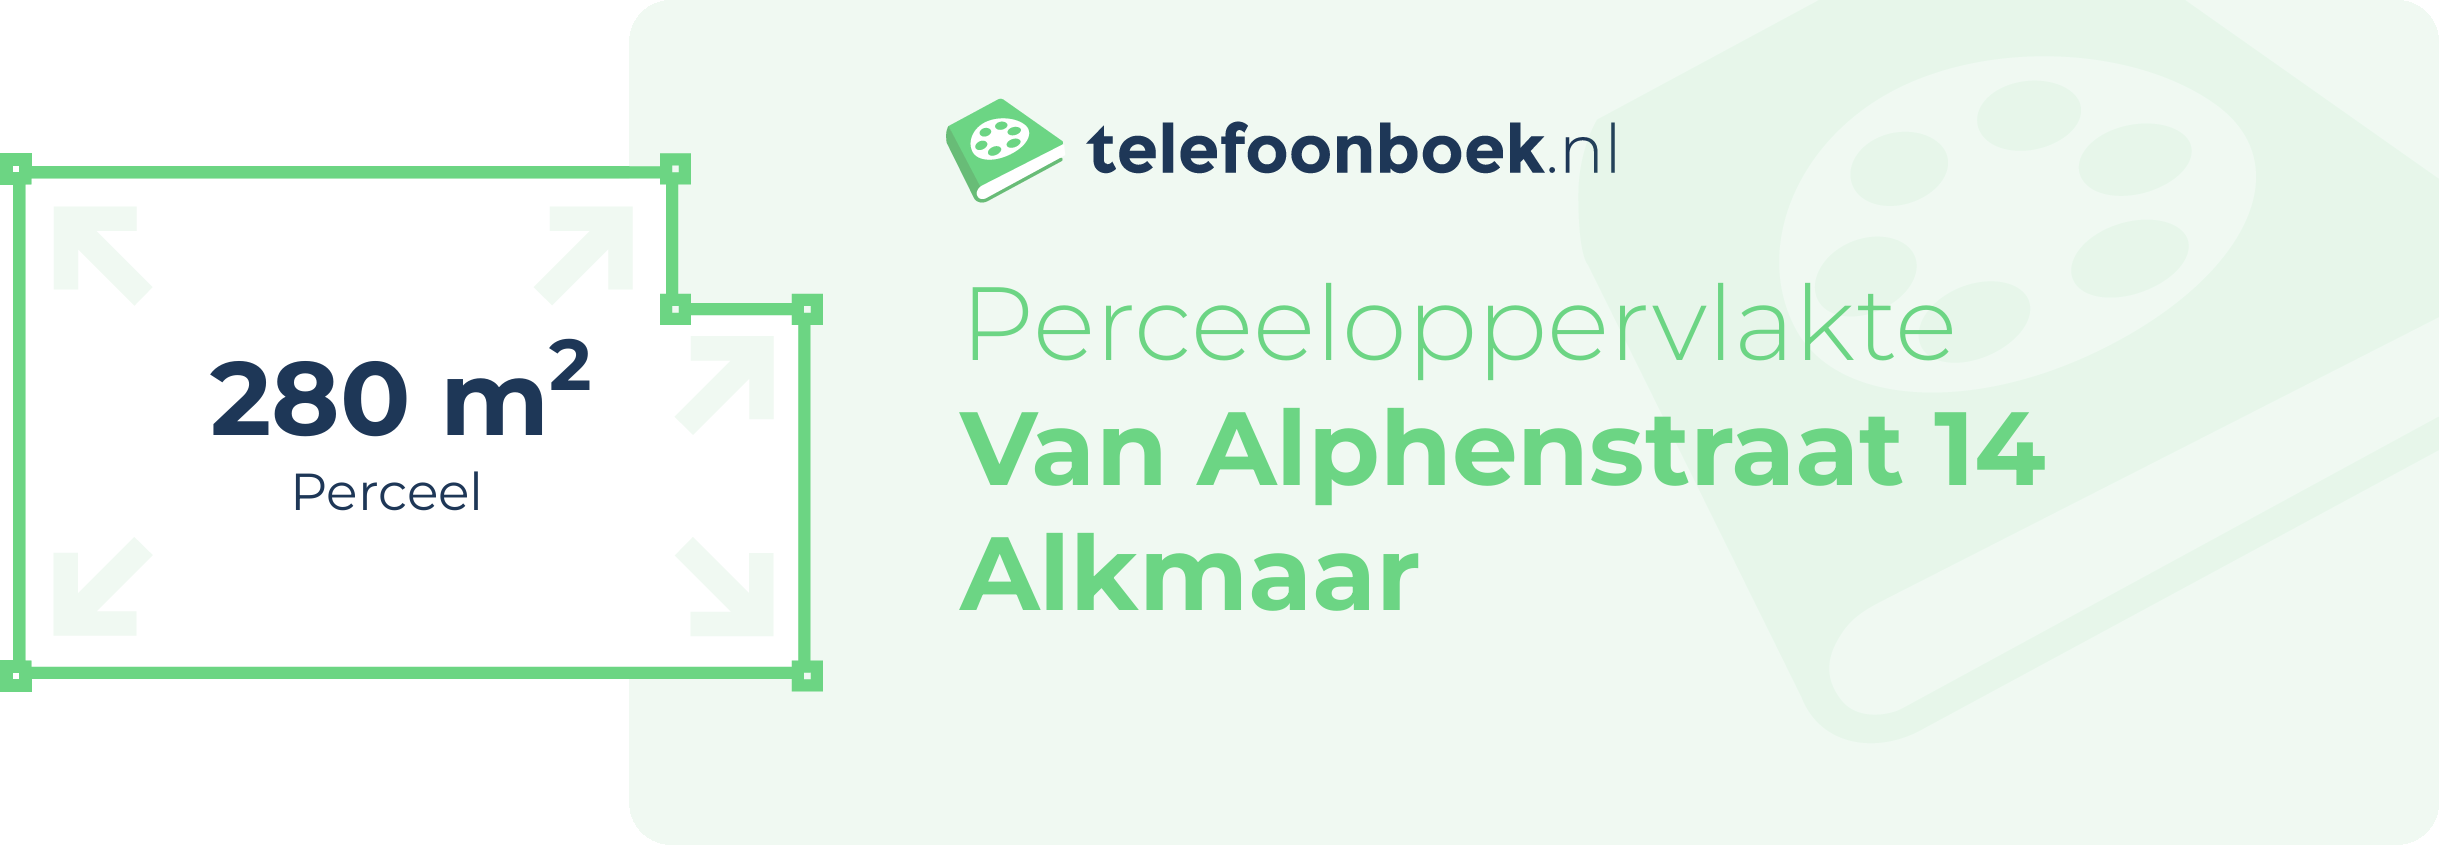 Perceeloppervlakte Van Alphenstraat 14 Alkmaar